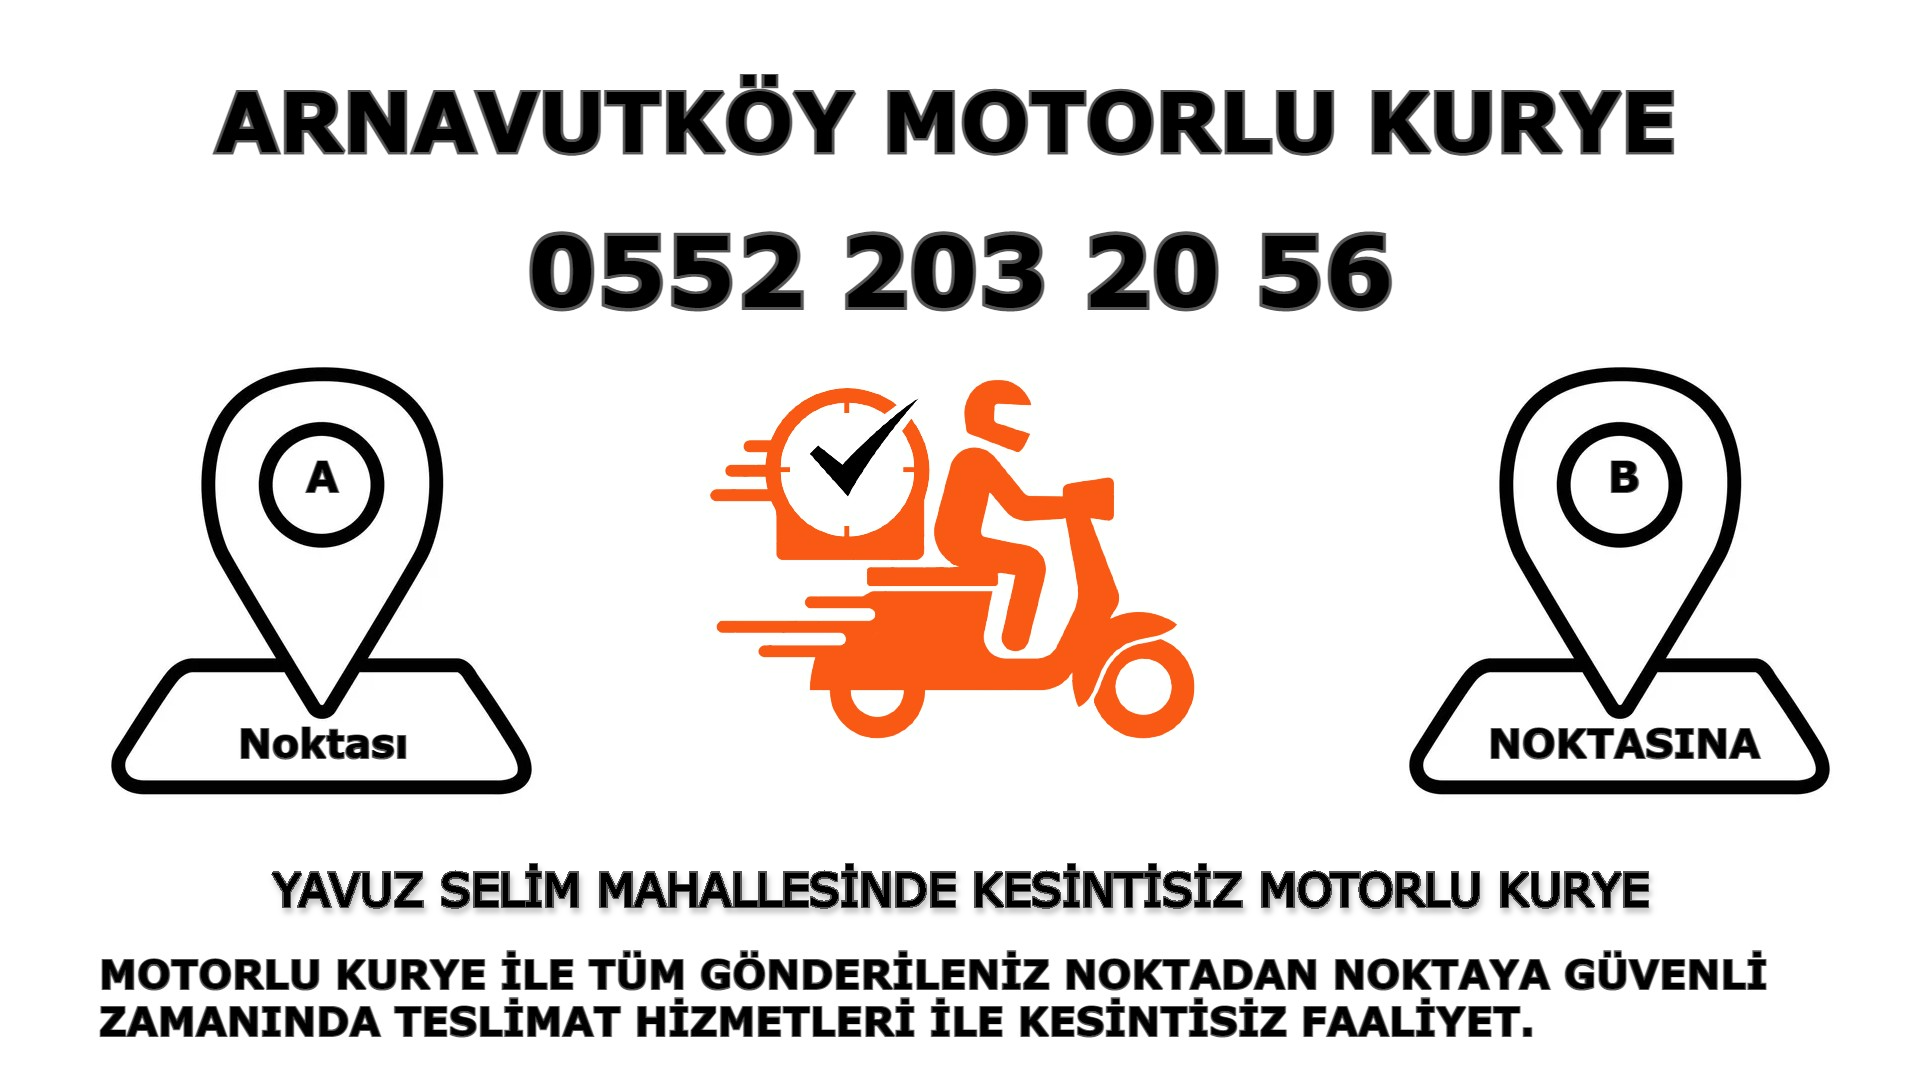 Yavuz Selim Acil Motorlu Kurye |7/24 | 0552 203 20 56